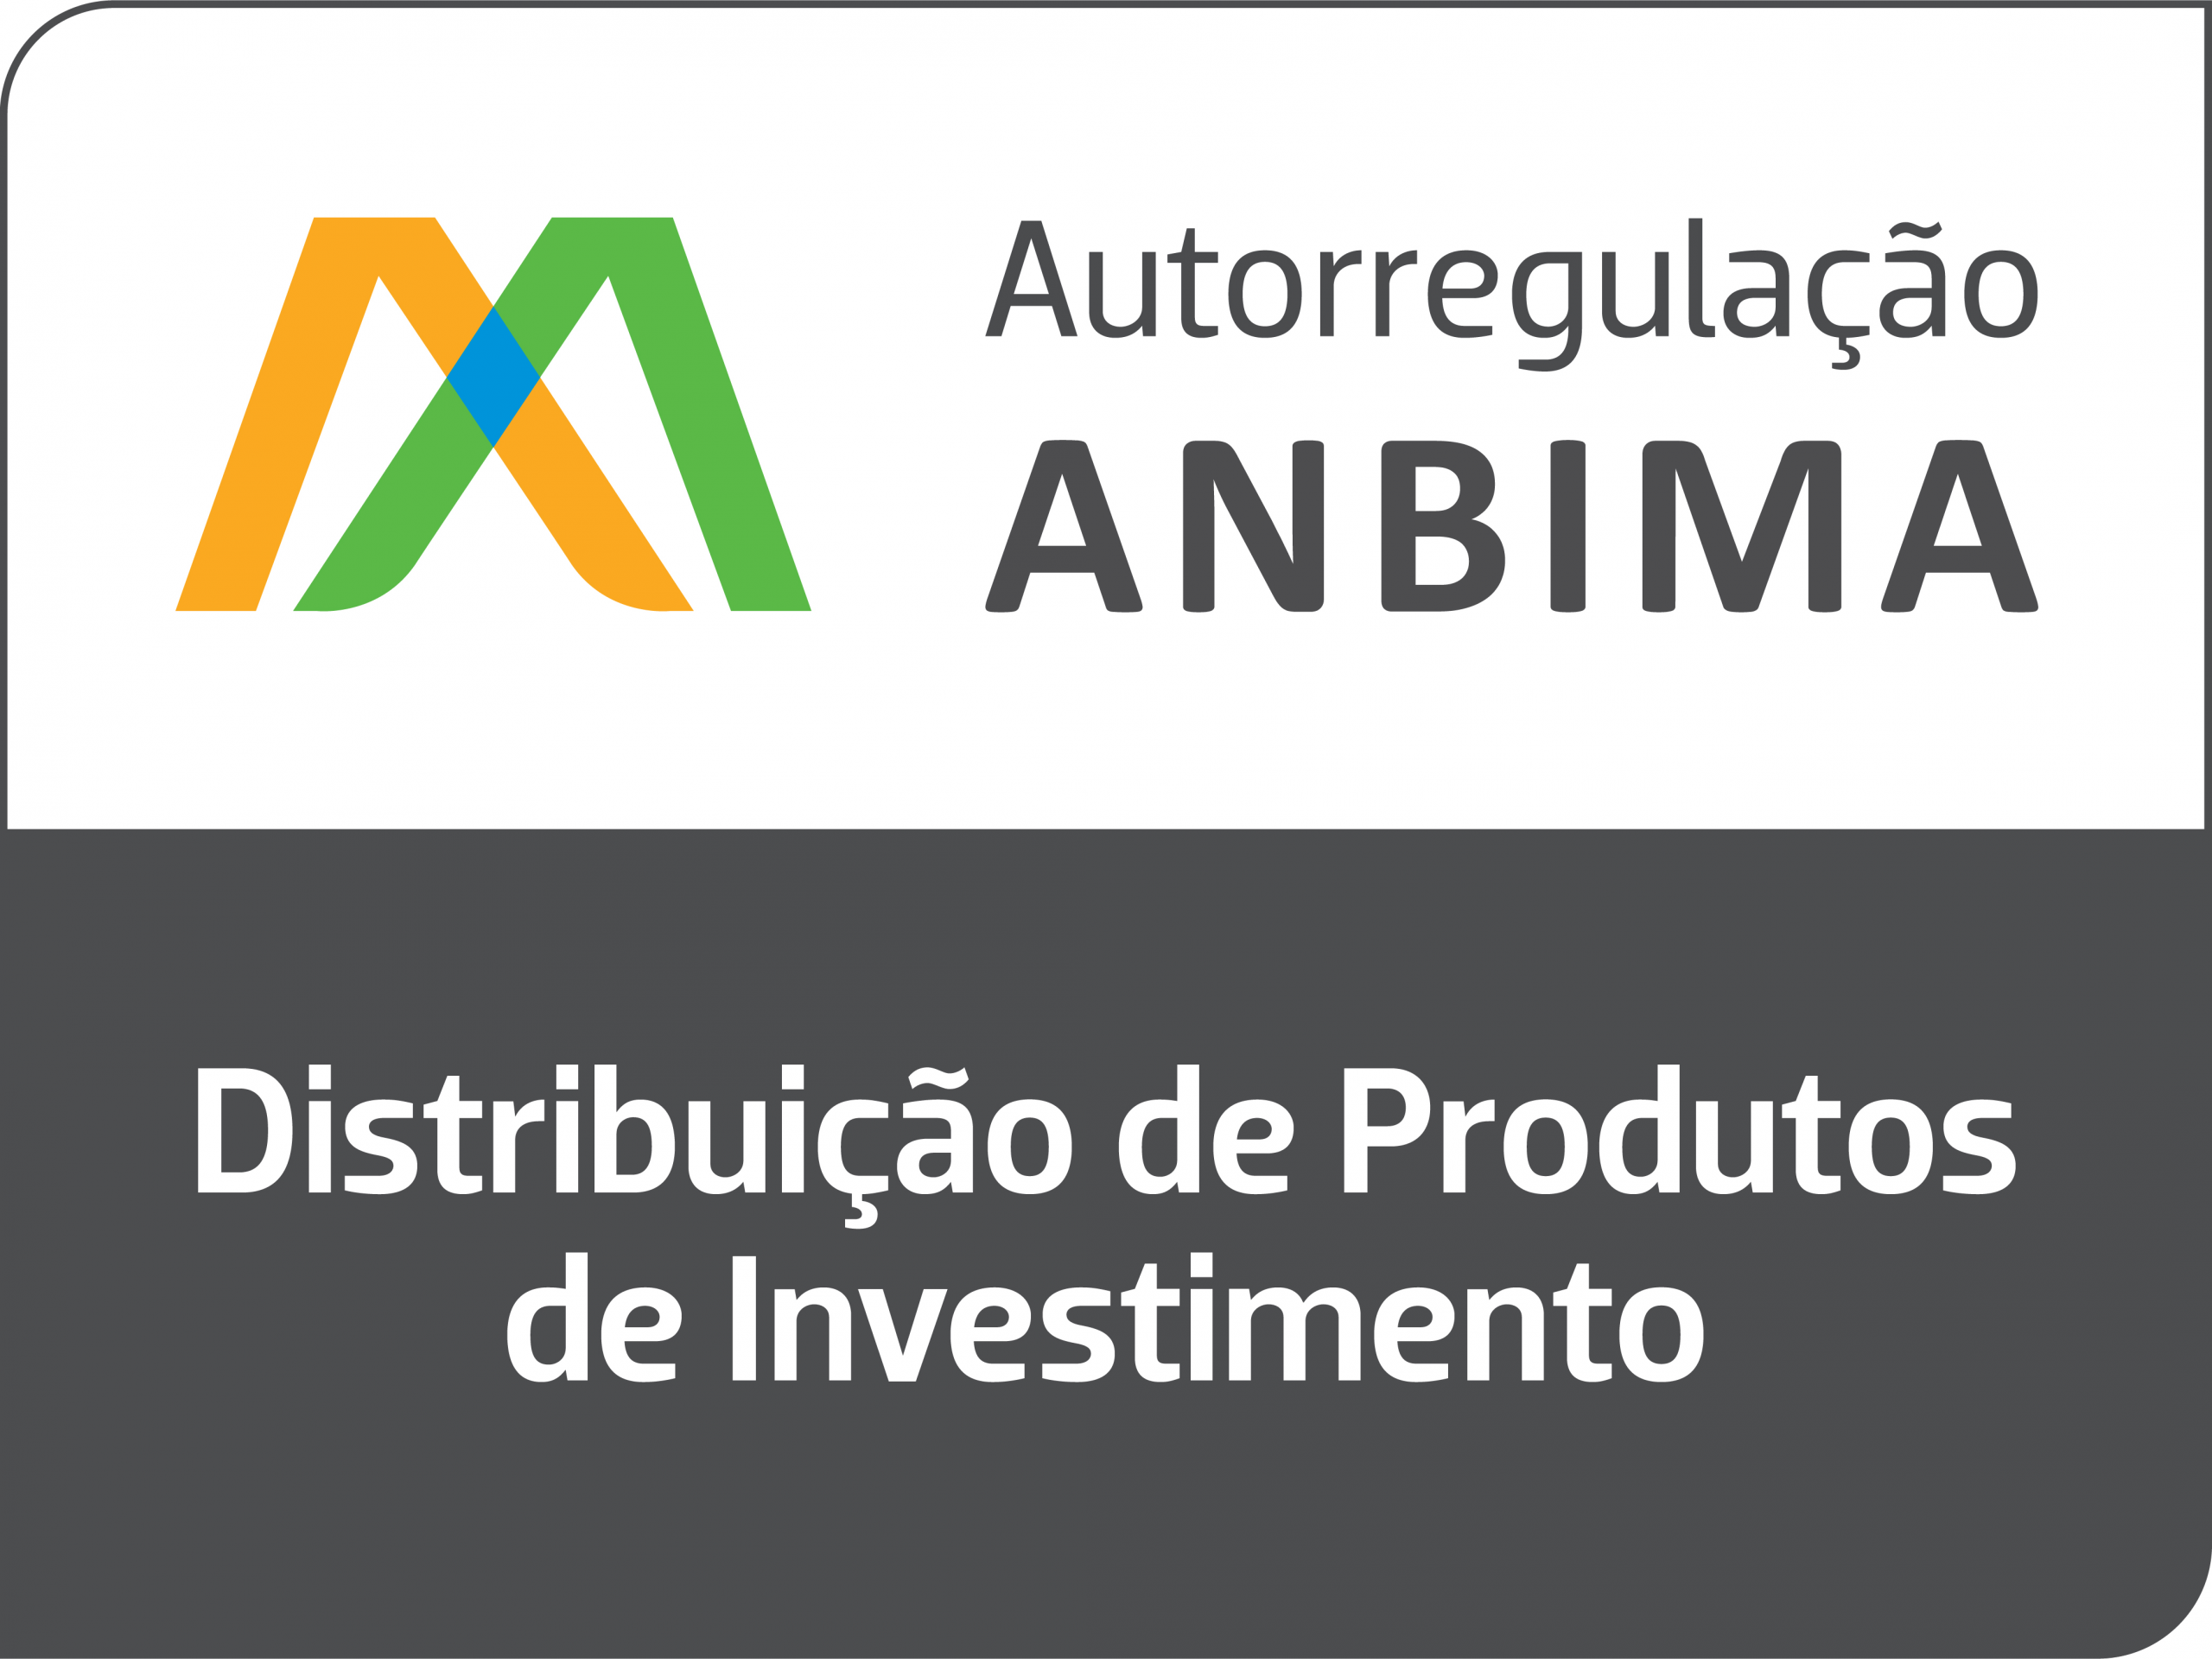 ANBIMA - Código anbima, Melhores práticas, Políticas de investimentos,  Distribuição de produtos. 